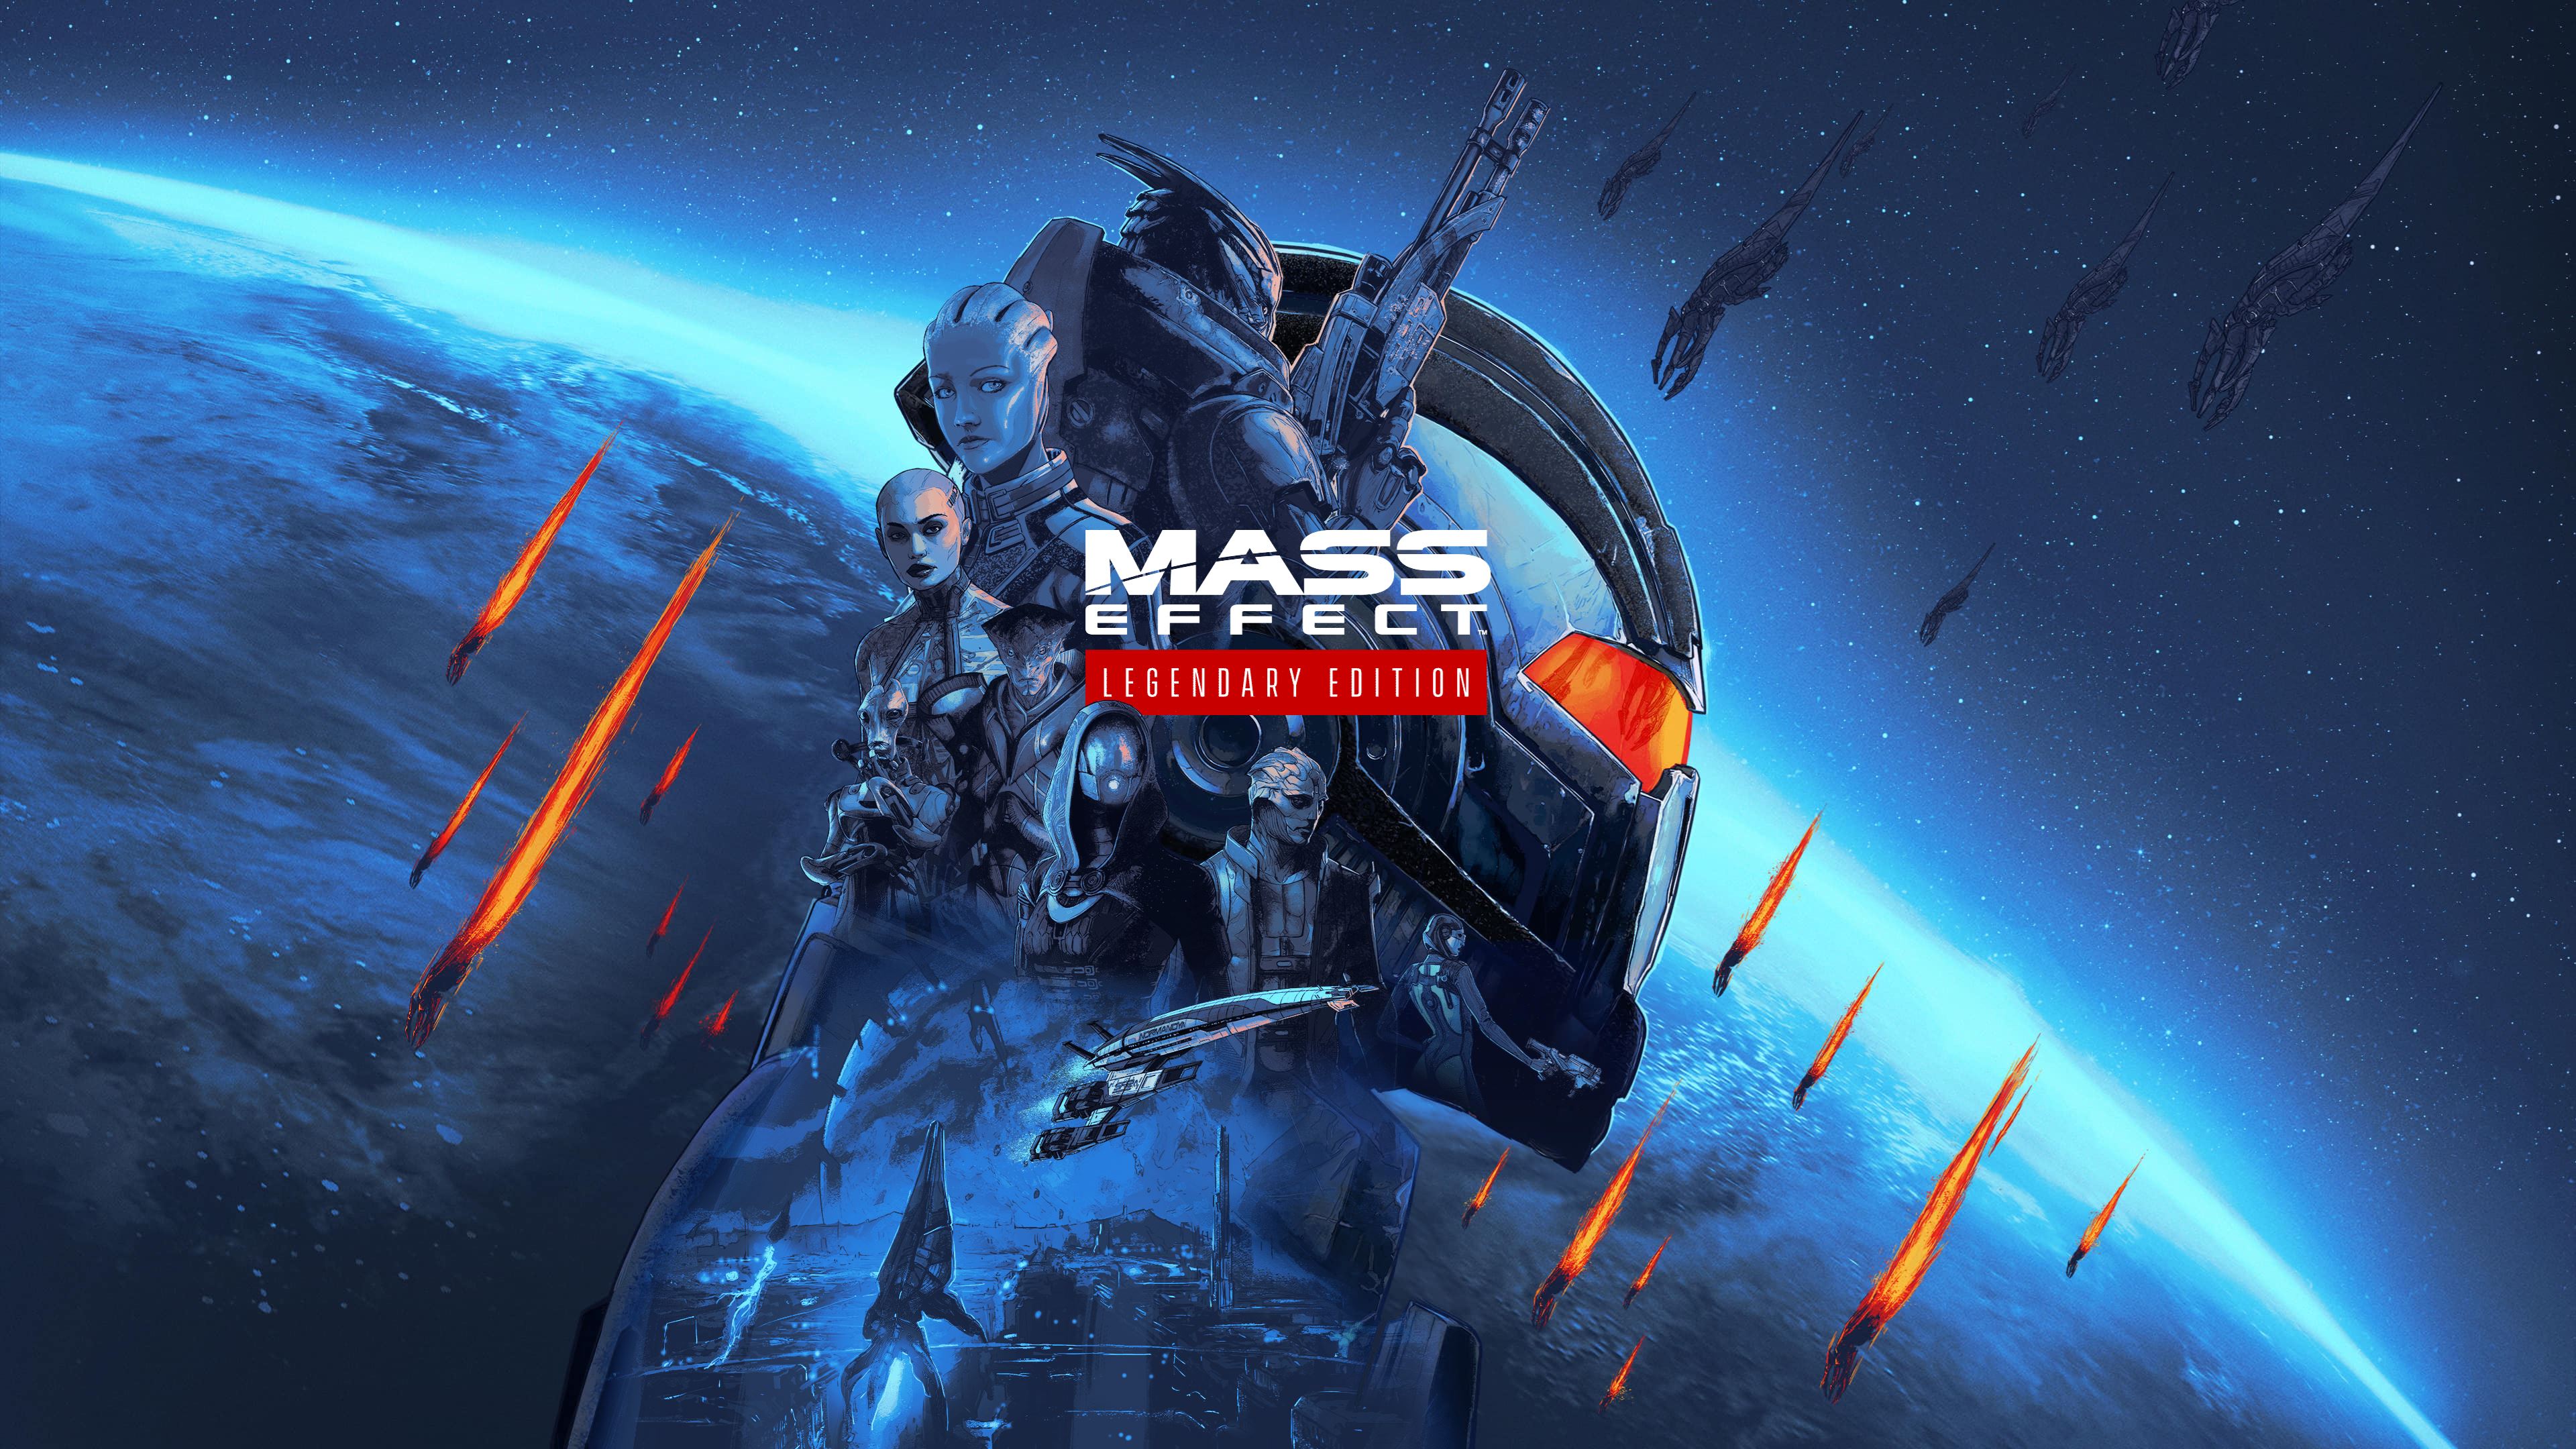 downloading Mass Effect™ издание Legendary